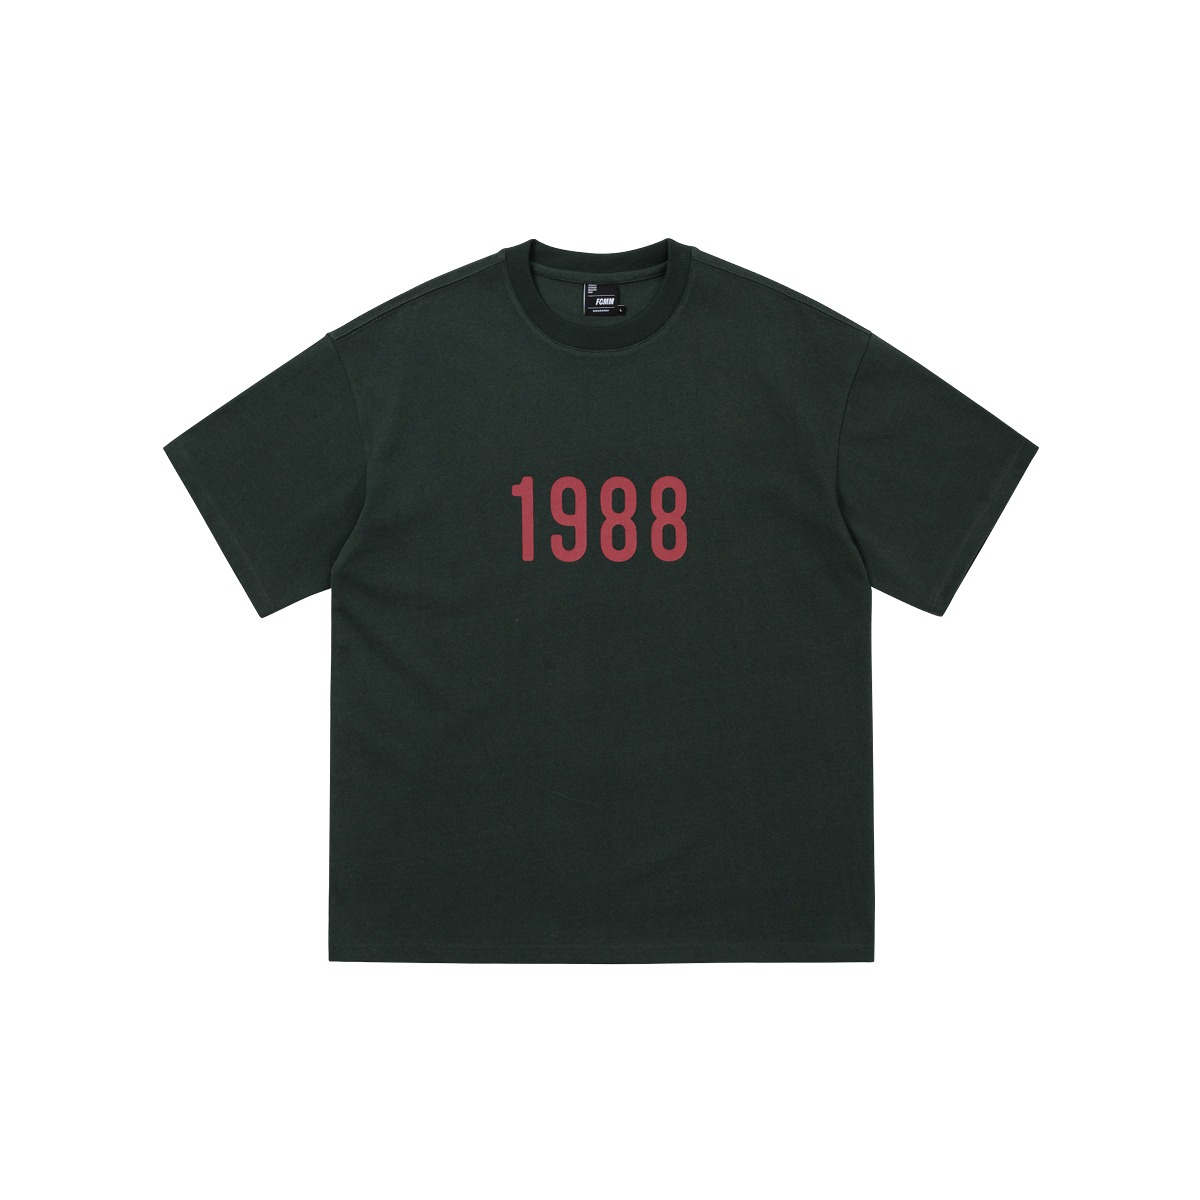 (04월 22일 순차발송)1988 레트로 티셔츠 - 다크 그린